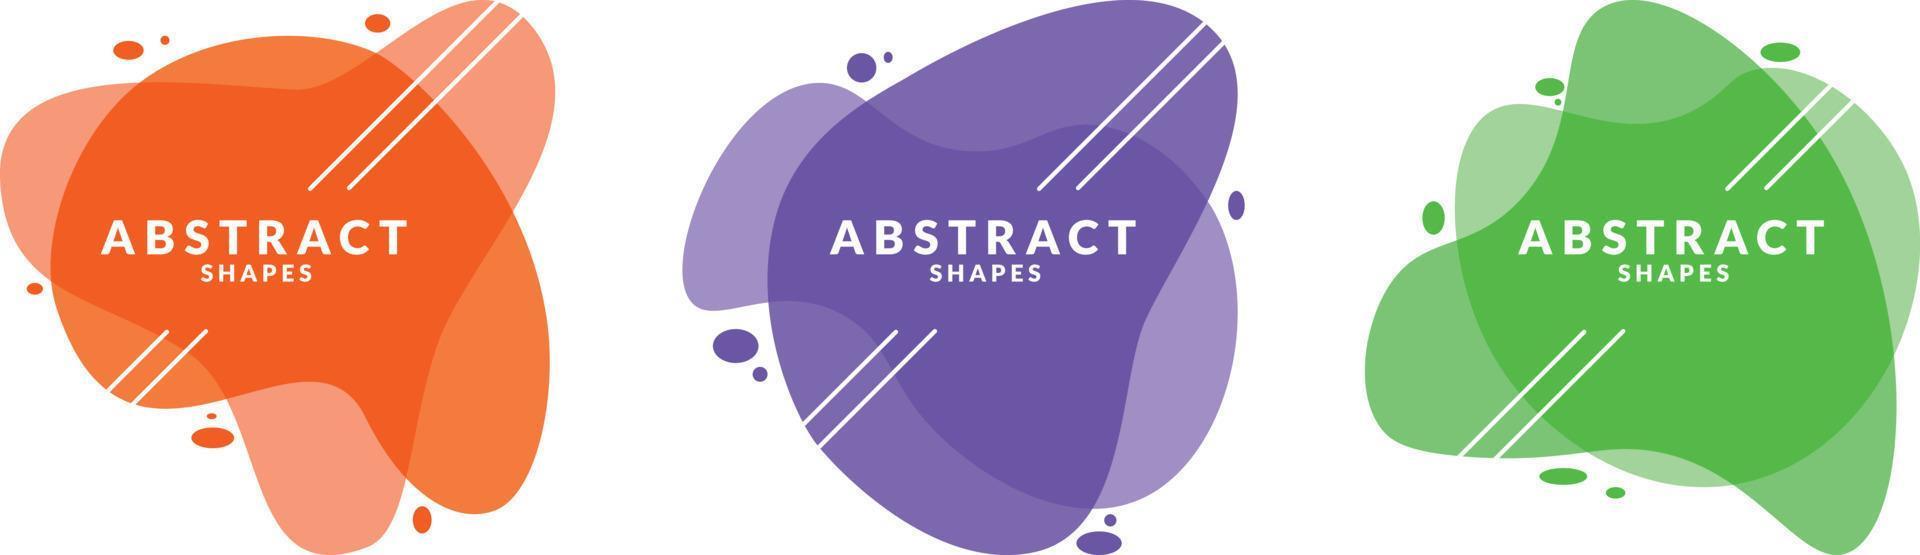 conjunto de elementos gráficos modernos abstractos. formas y líneas de colores dinámicos. banners abstractos degradados con formas líquidas que fluyen. vector